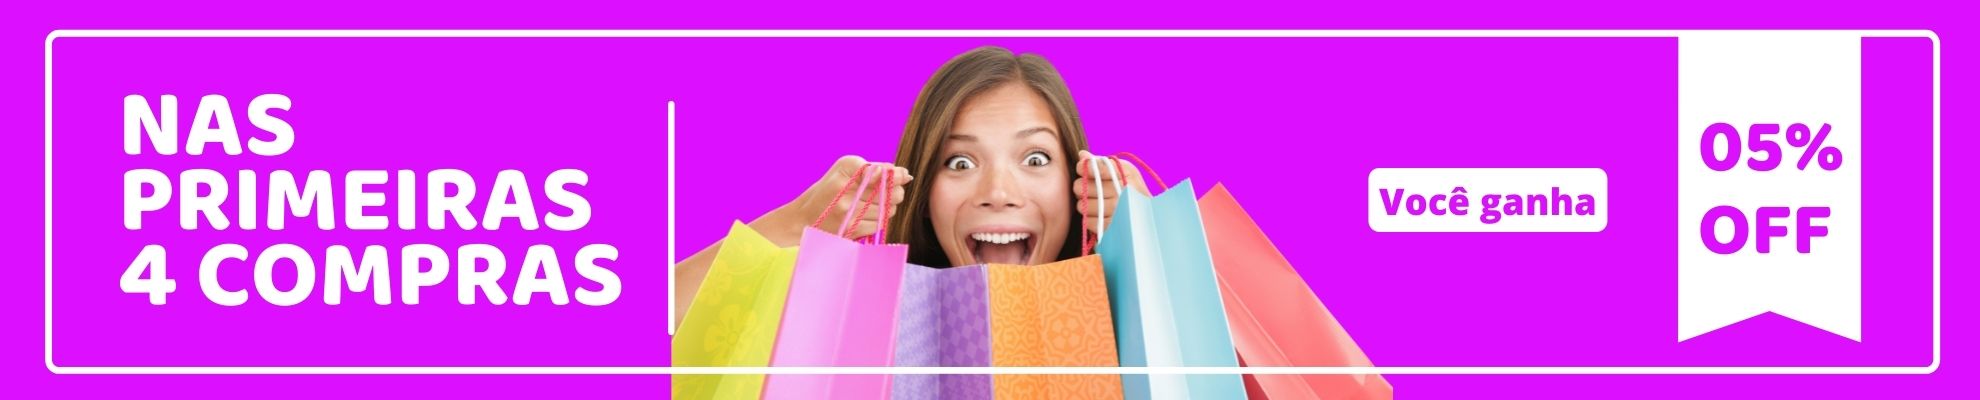 Nas primeiras 4 compras você ganha 5% OFF!| Milli Online